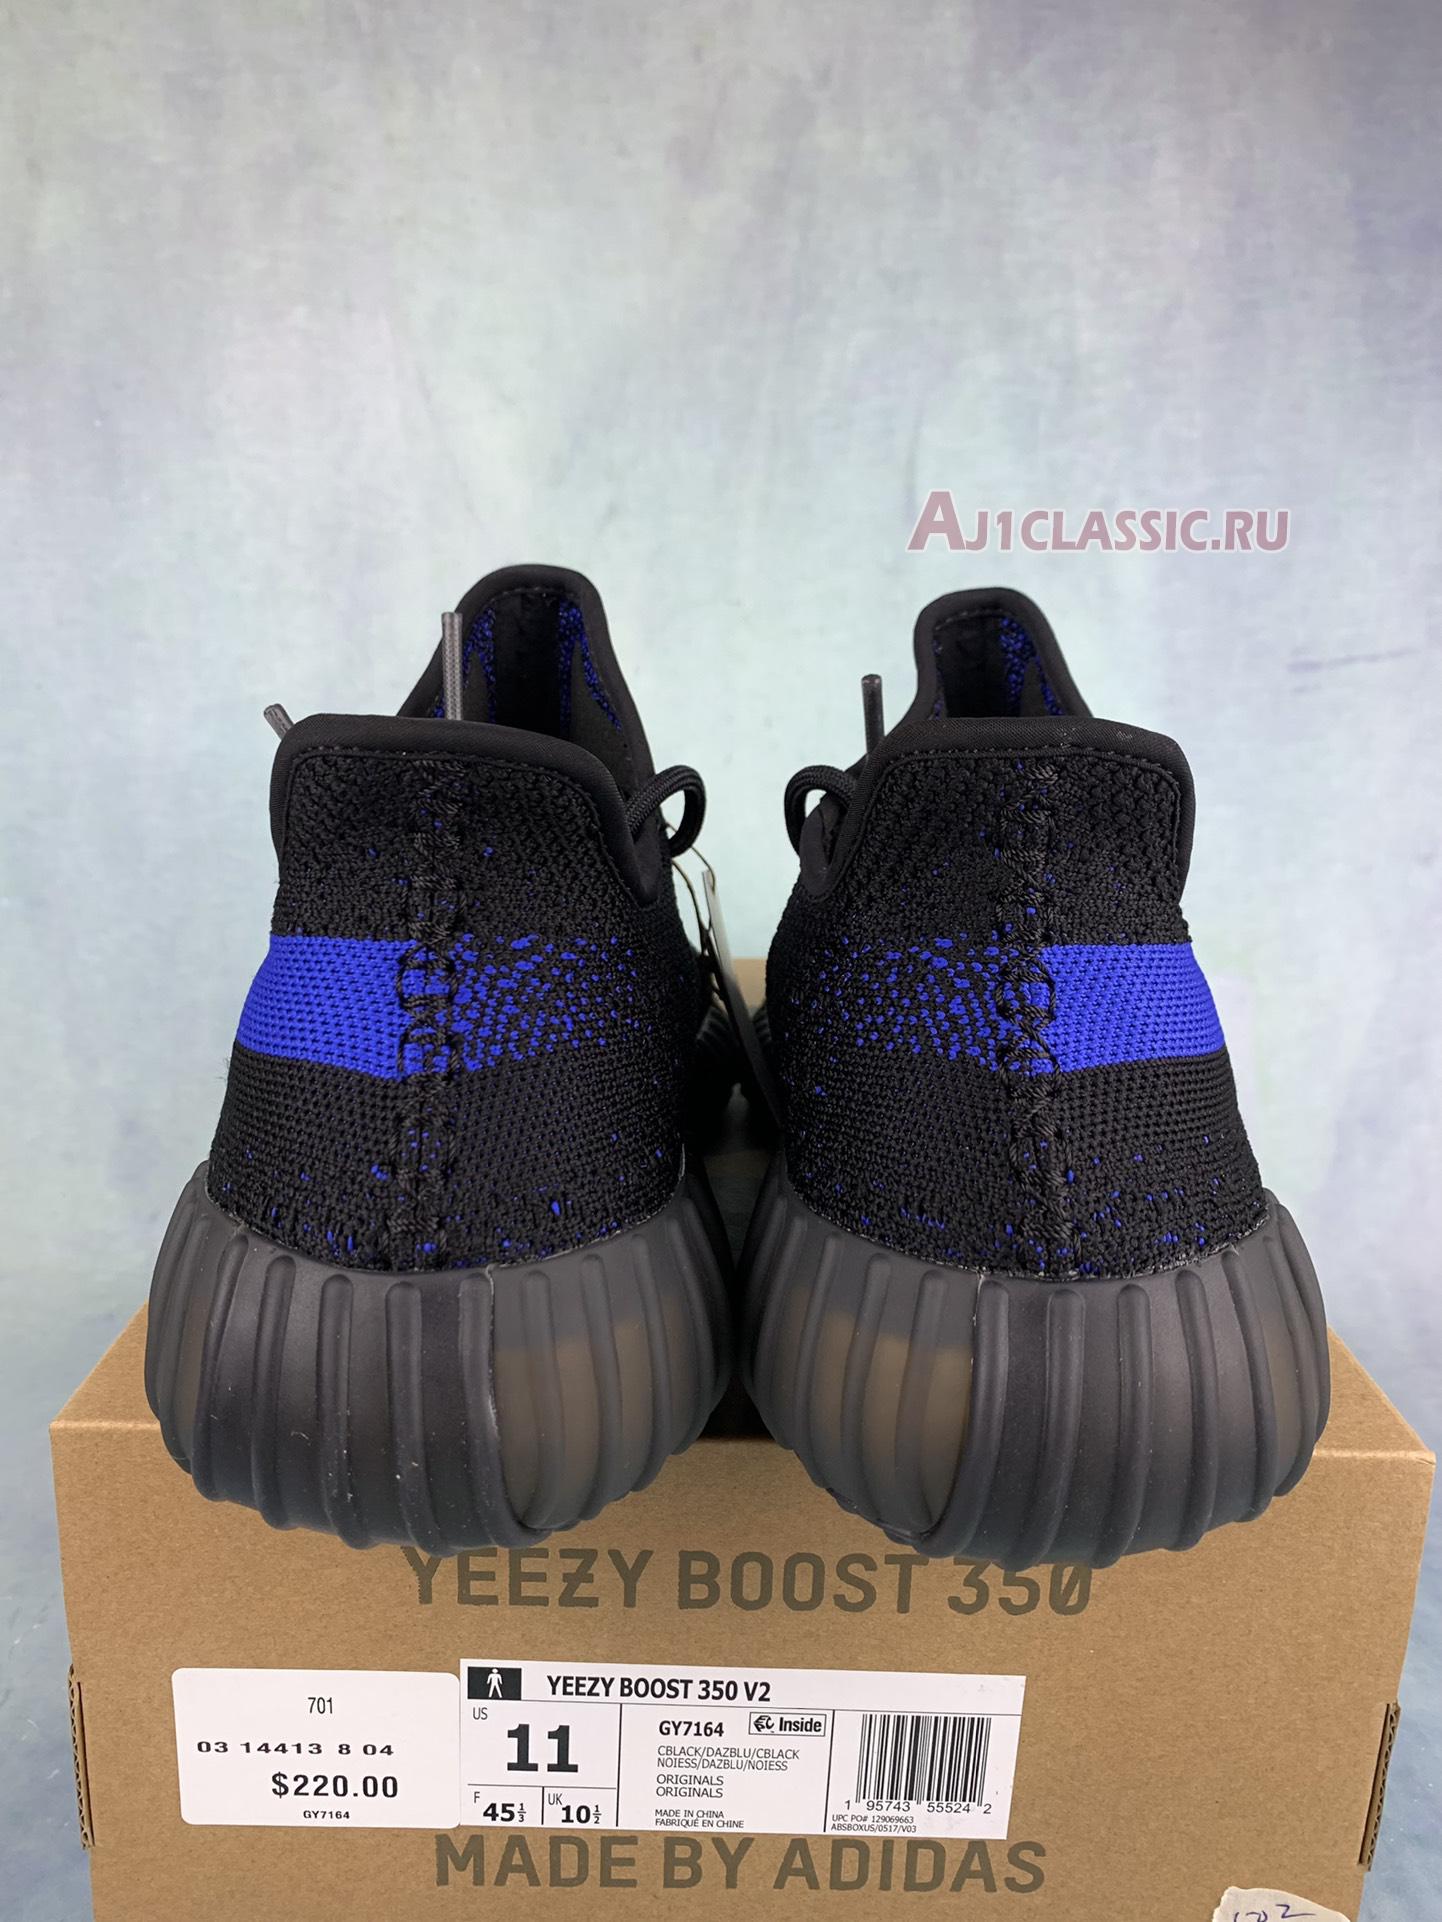 Adidas Yeezy Boost 350 V2 "Dazzling Blue" GY7164-2